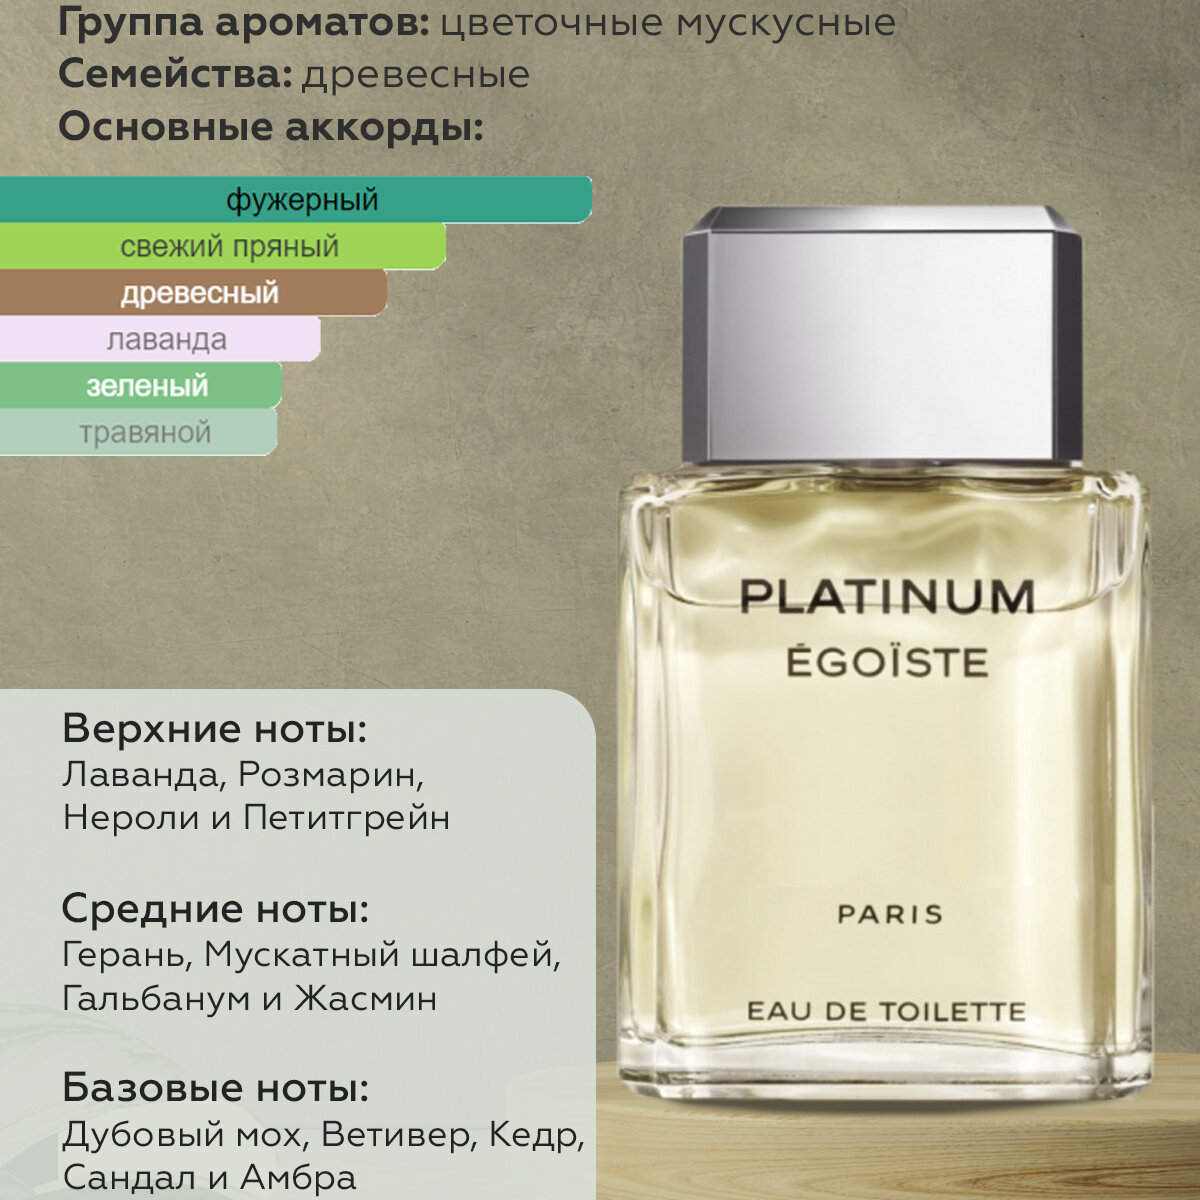 Gratus Parfum Egoiste Platinum Автопарфюм 7 мл / Ароматизатор для автомобиля и дома